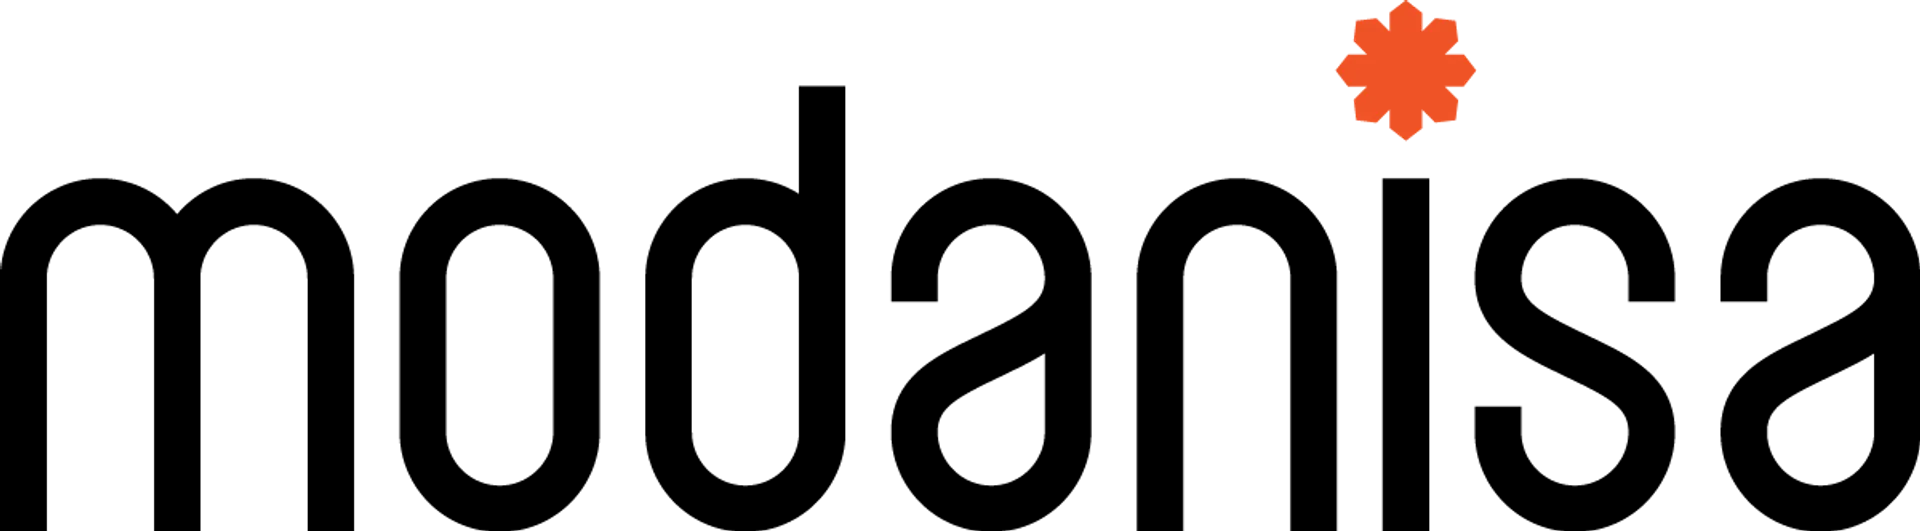 MODANISA logo